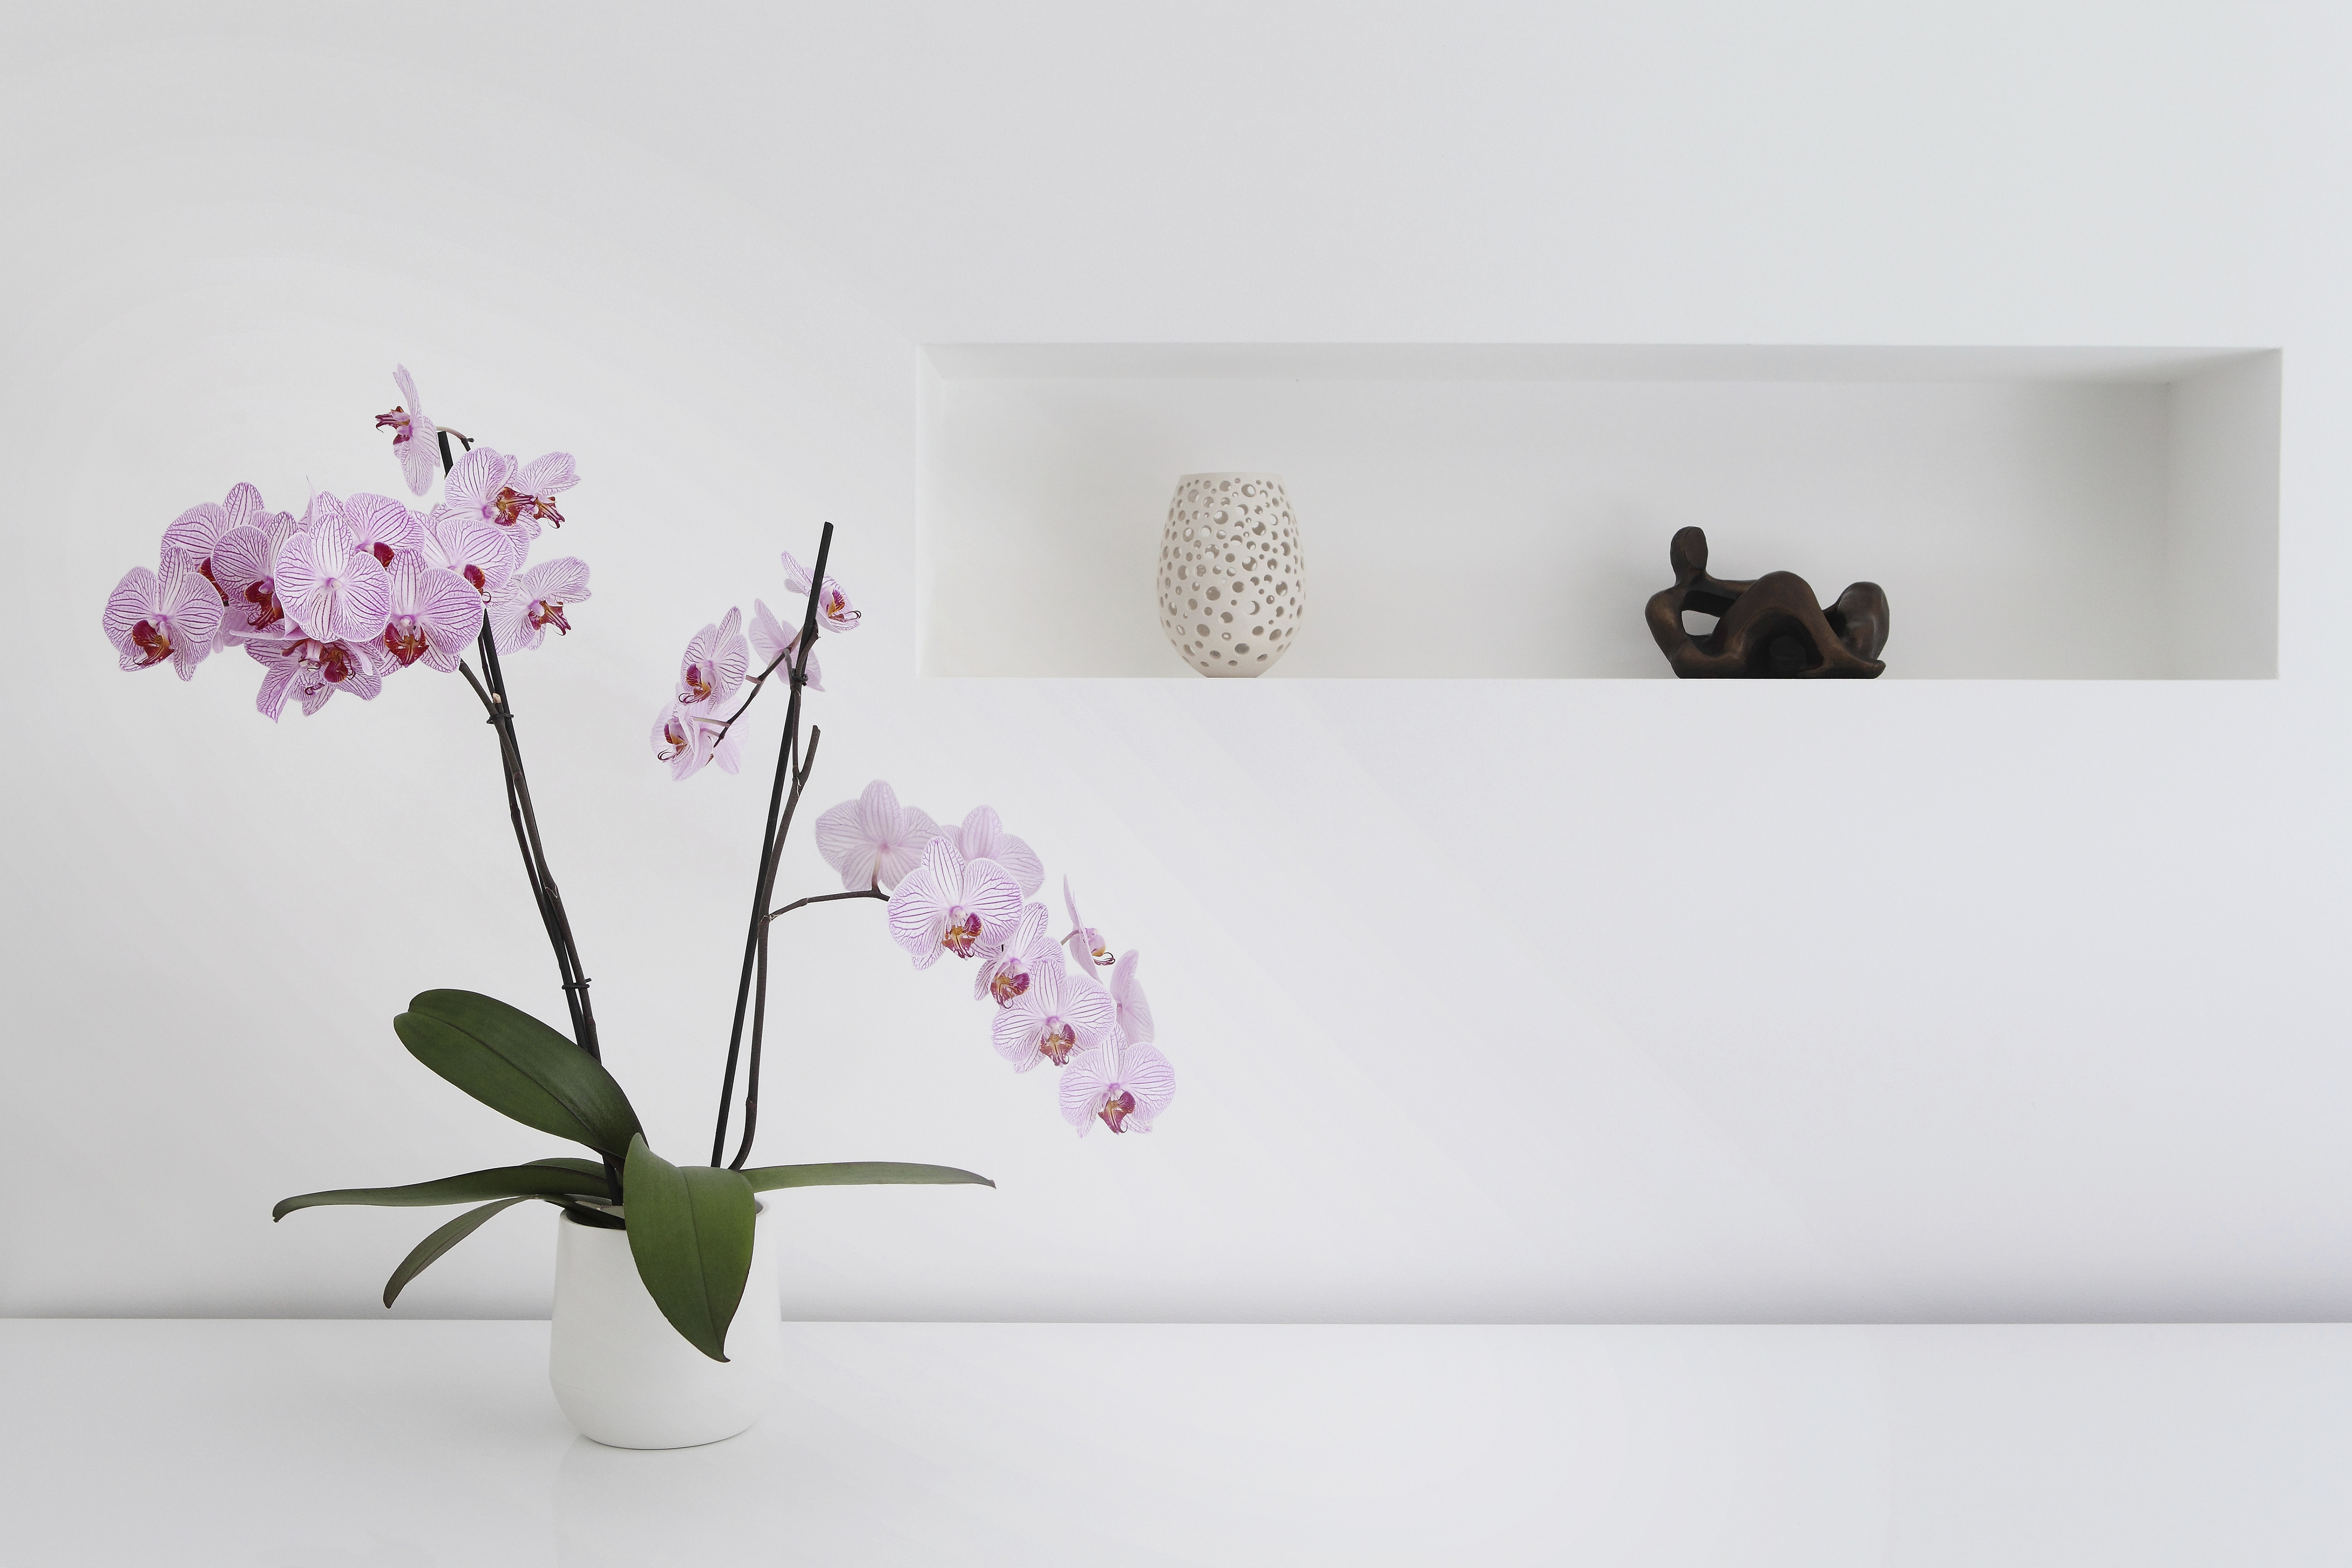 Plante d'orchidée rose et ornements dans la chambre | Source : Getty Images